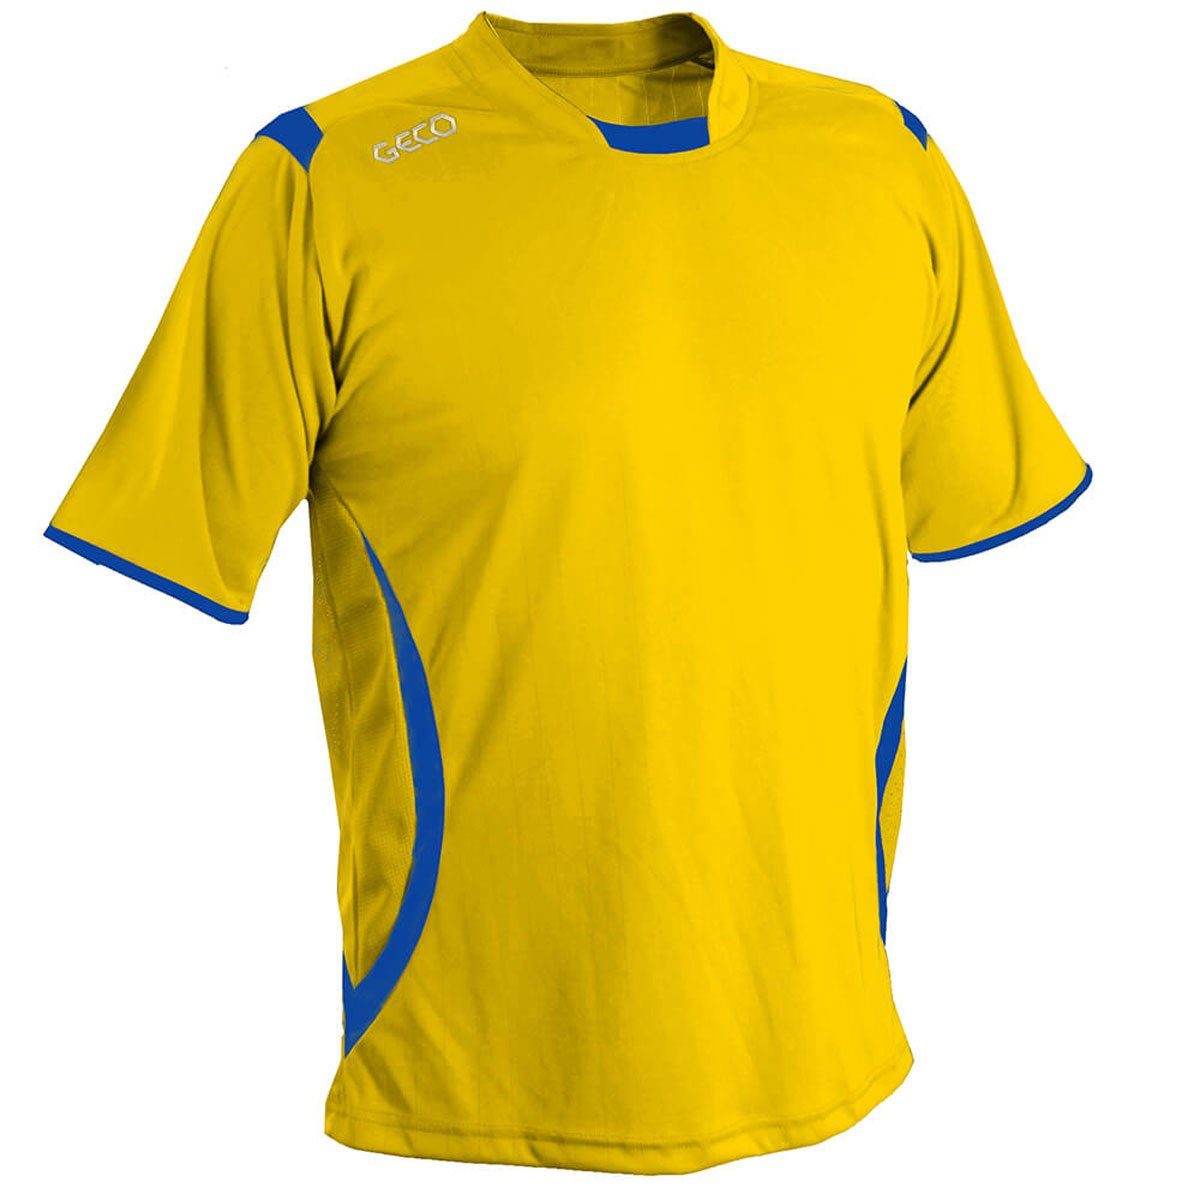 kurzarm Trikot Levante zweifarbig Fußballtrikot Mesheinsätze Geco Sportswear gelb/blau Fußballtrikot Fußball seitliche